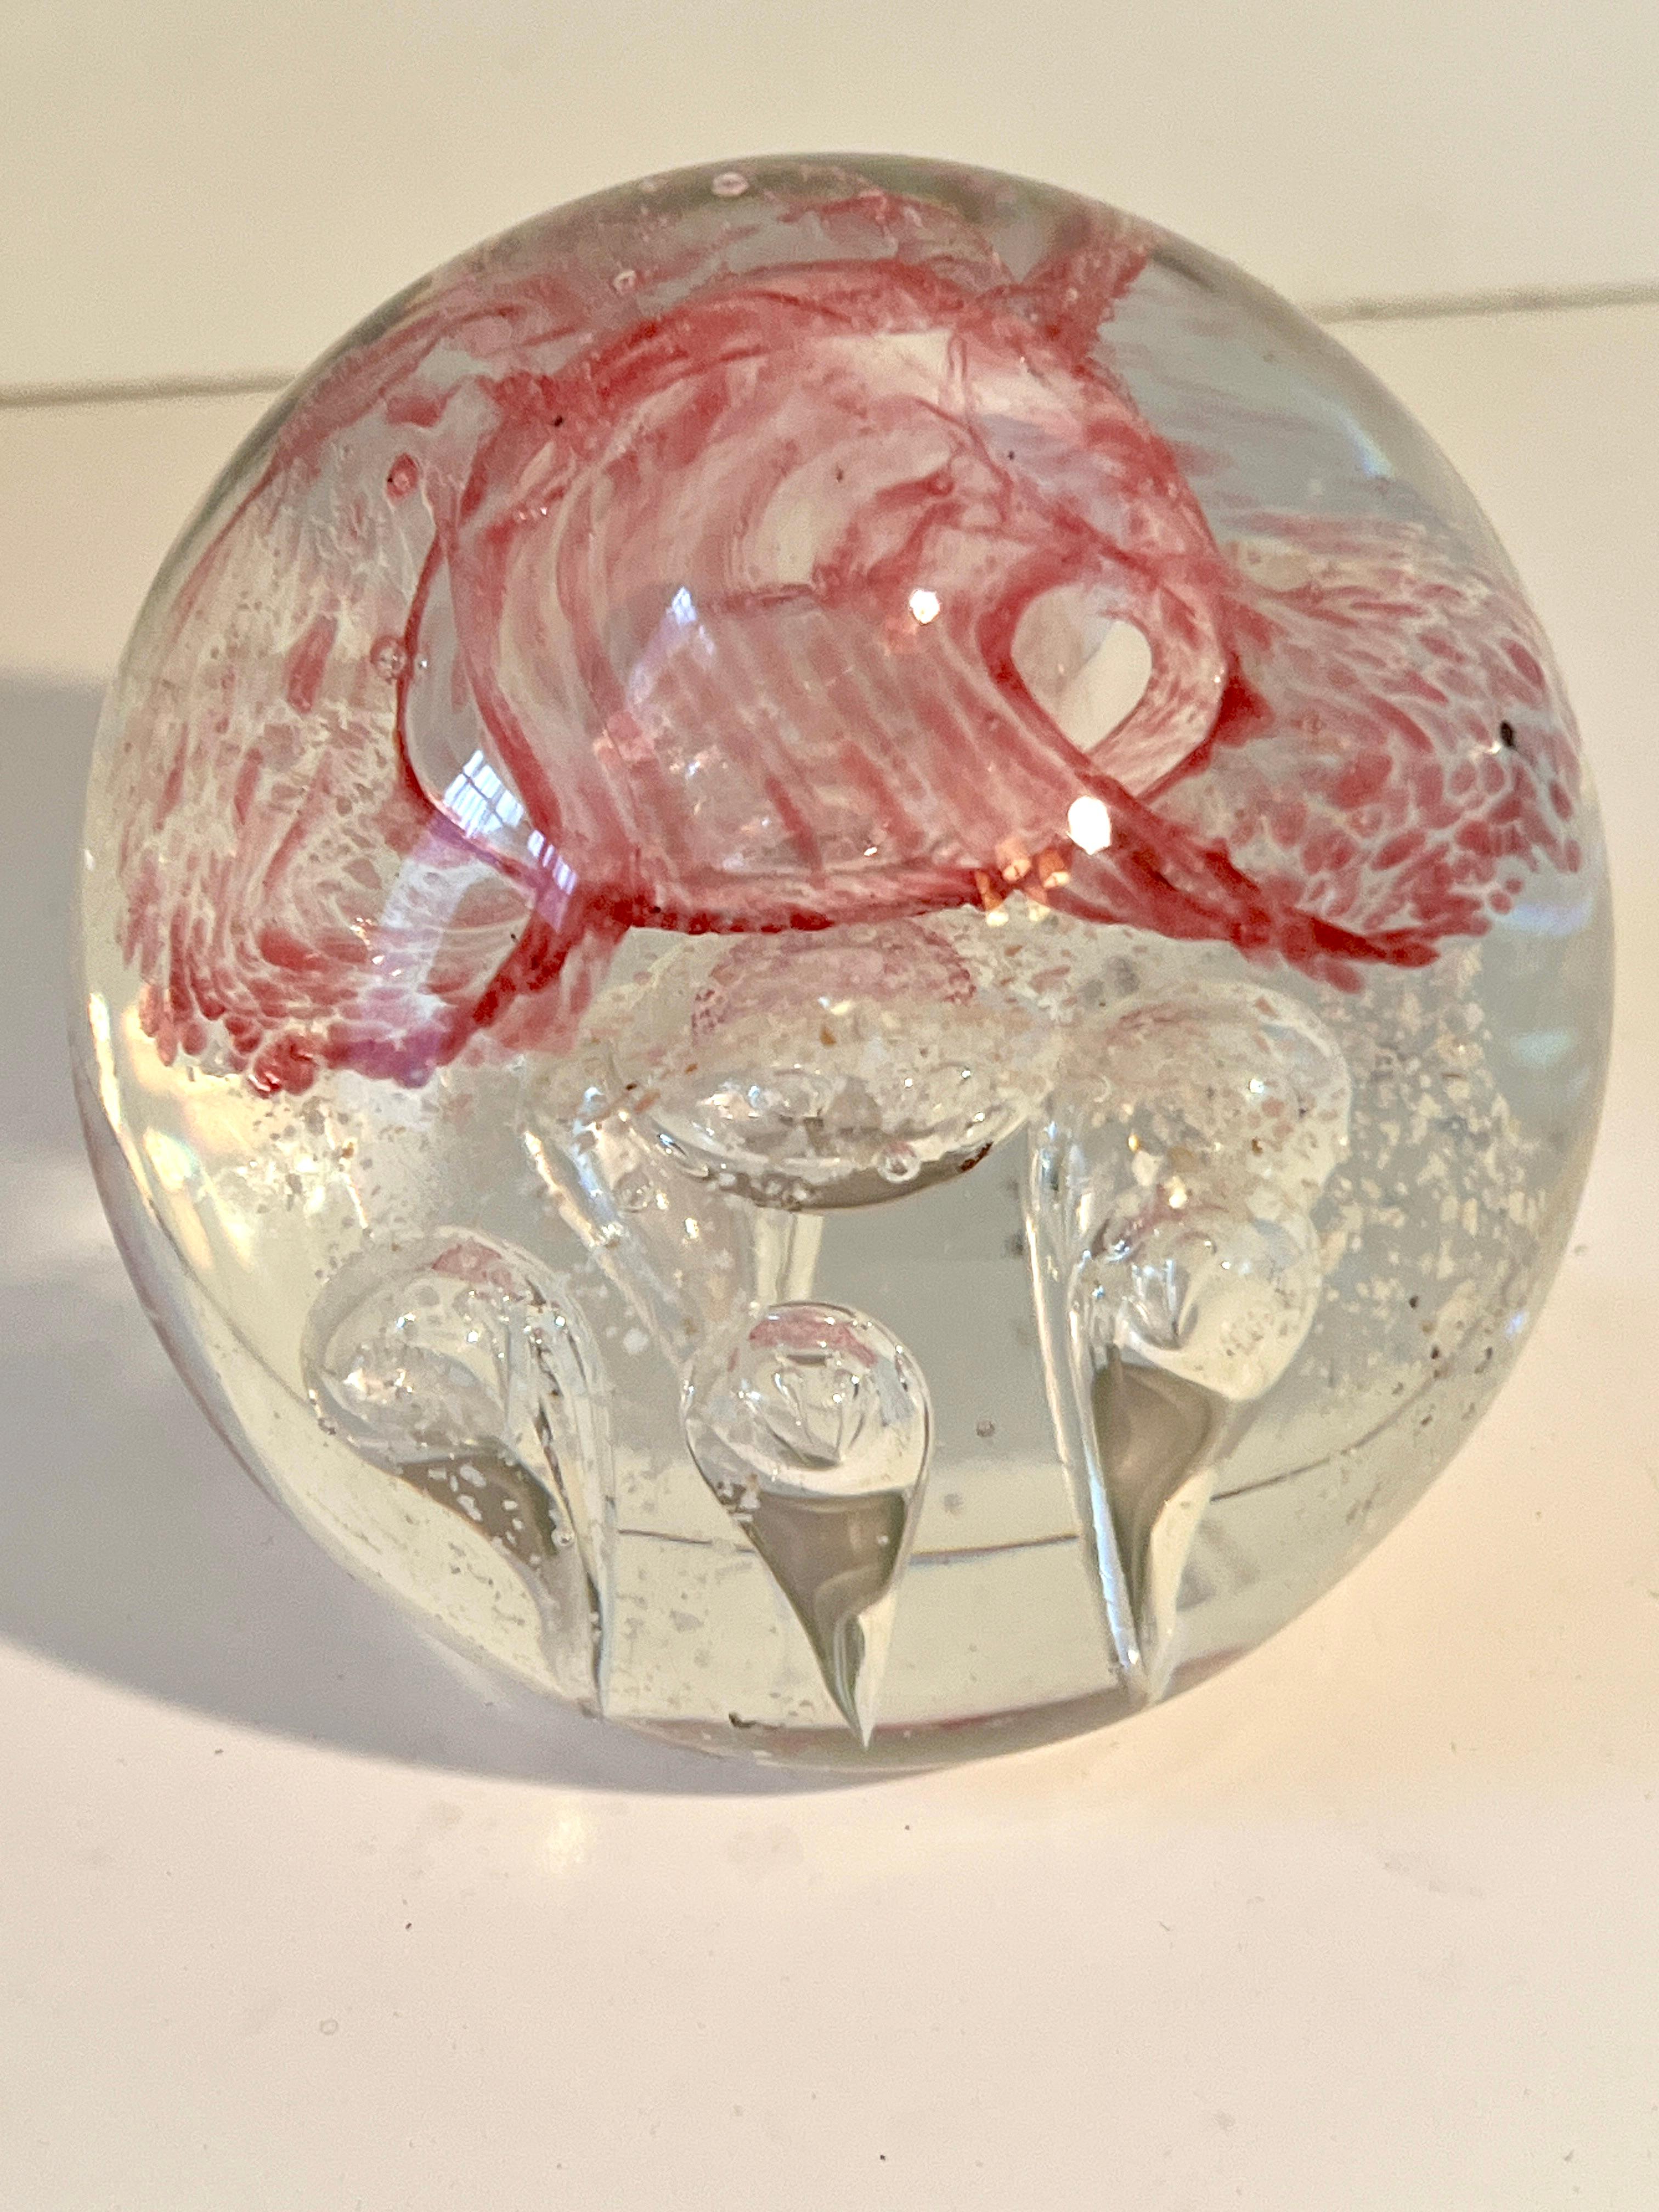 Un magnifique poids de papier en verre avec de grosses bulles, souvent symétriques, et un joli ruban rouge en spirale à l'intérieur.

Un complément à tout bureau, poste de travail ou comme élément décoratif sur une table de cocktail.  La pièce est